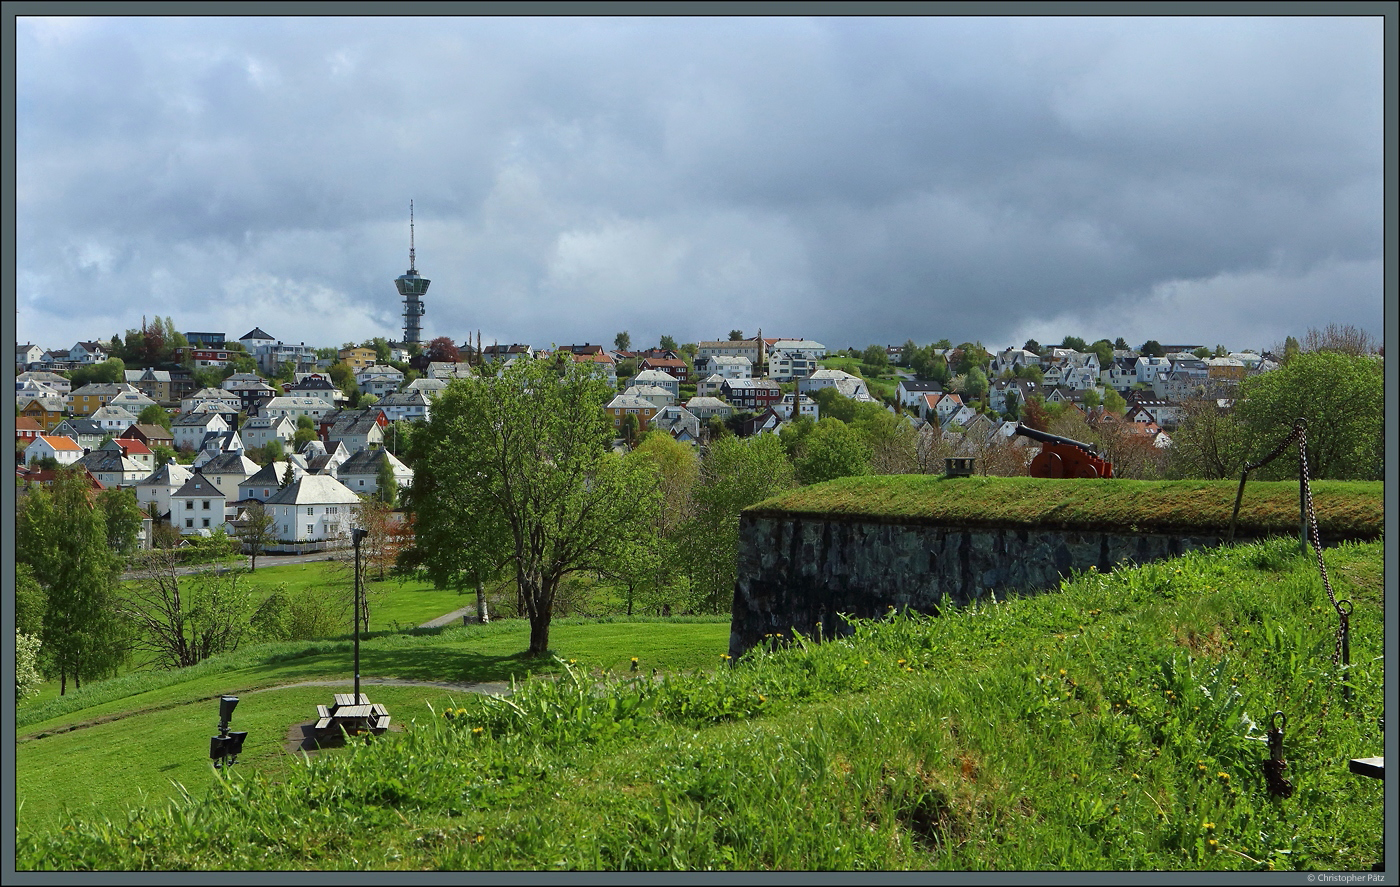 Oberhalb der Festung Kristiansten liegt auf einem Hgel der Fernsehturm Tyholttrnet, der auch eine Aussichtsplattform besitzt. Er wurde 1985 errichtet und befindet sich im Stadtteil Tyhold. (Trondheim, 26.05.2023)